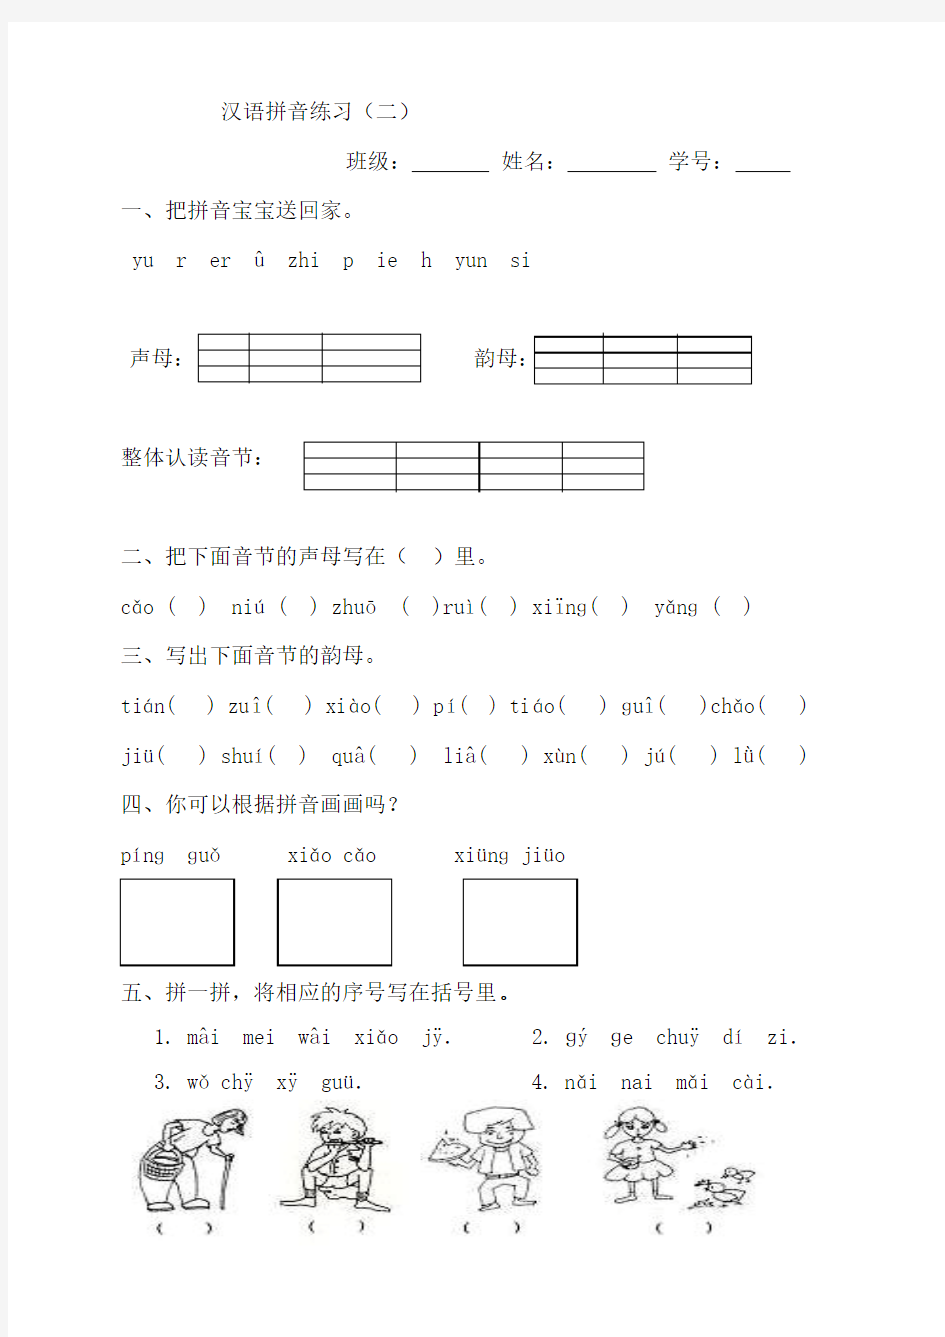 汉语拼音部分